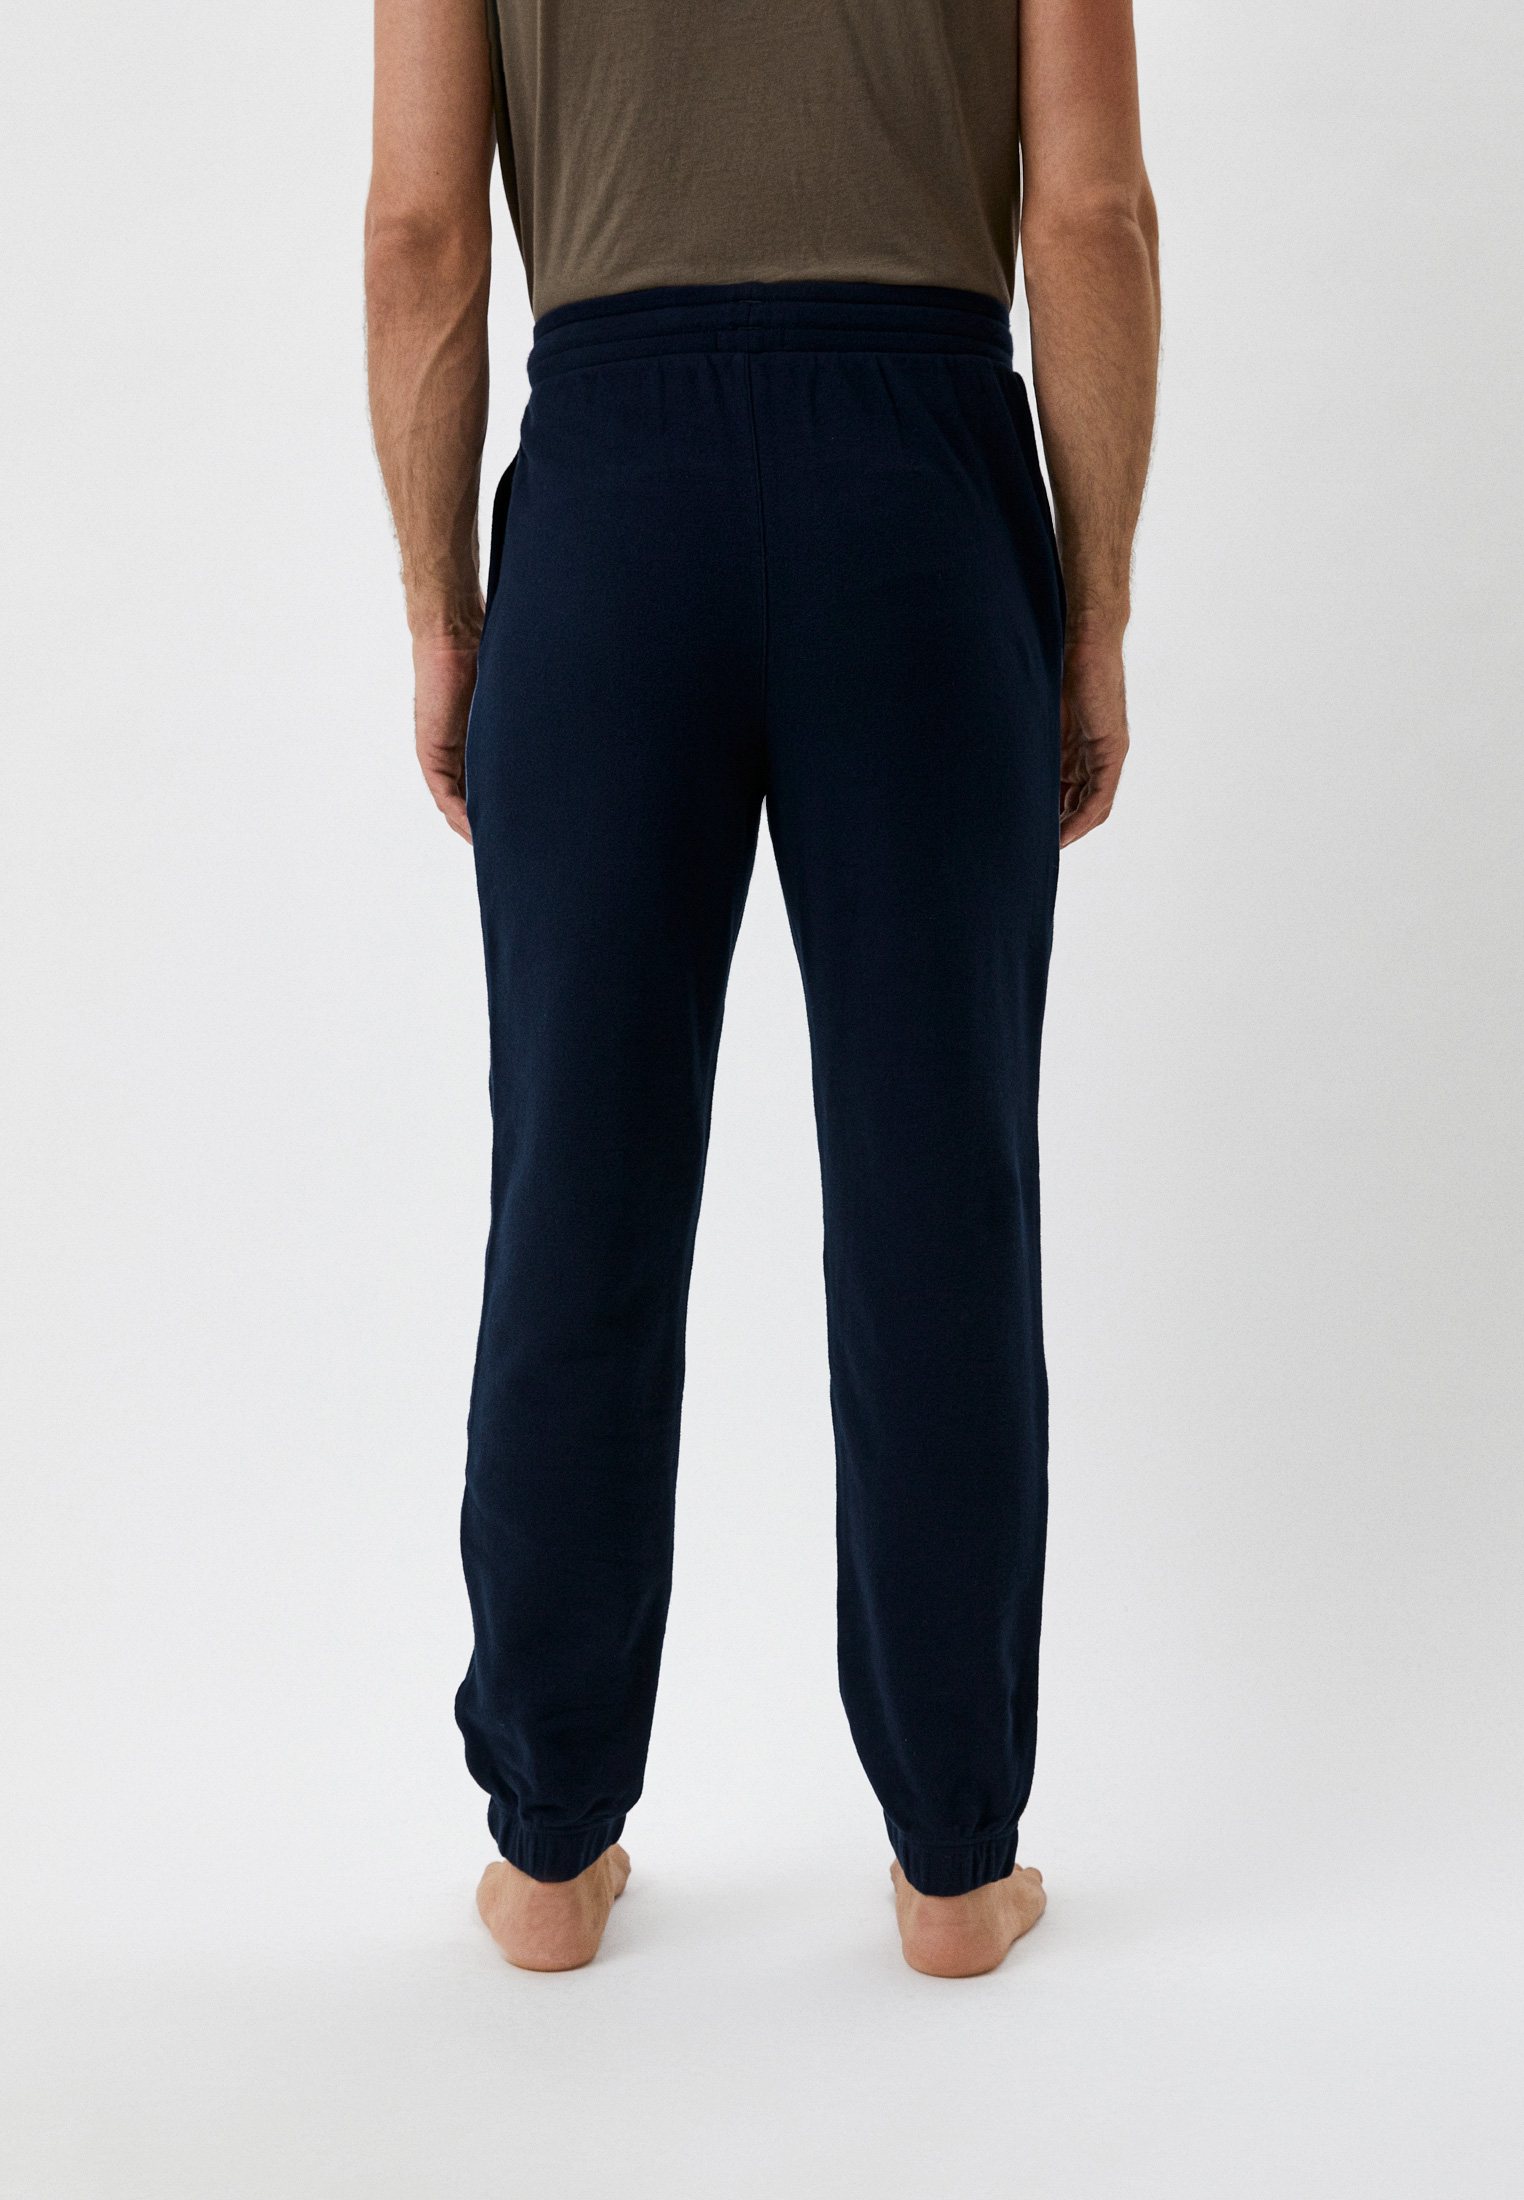 Мужские домашние брюки Emporio Armani (Эмпорио Армани) 111996 2F573: изображение 3